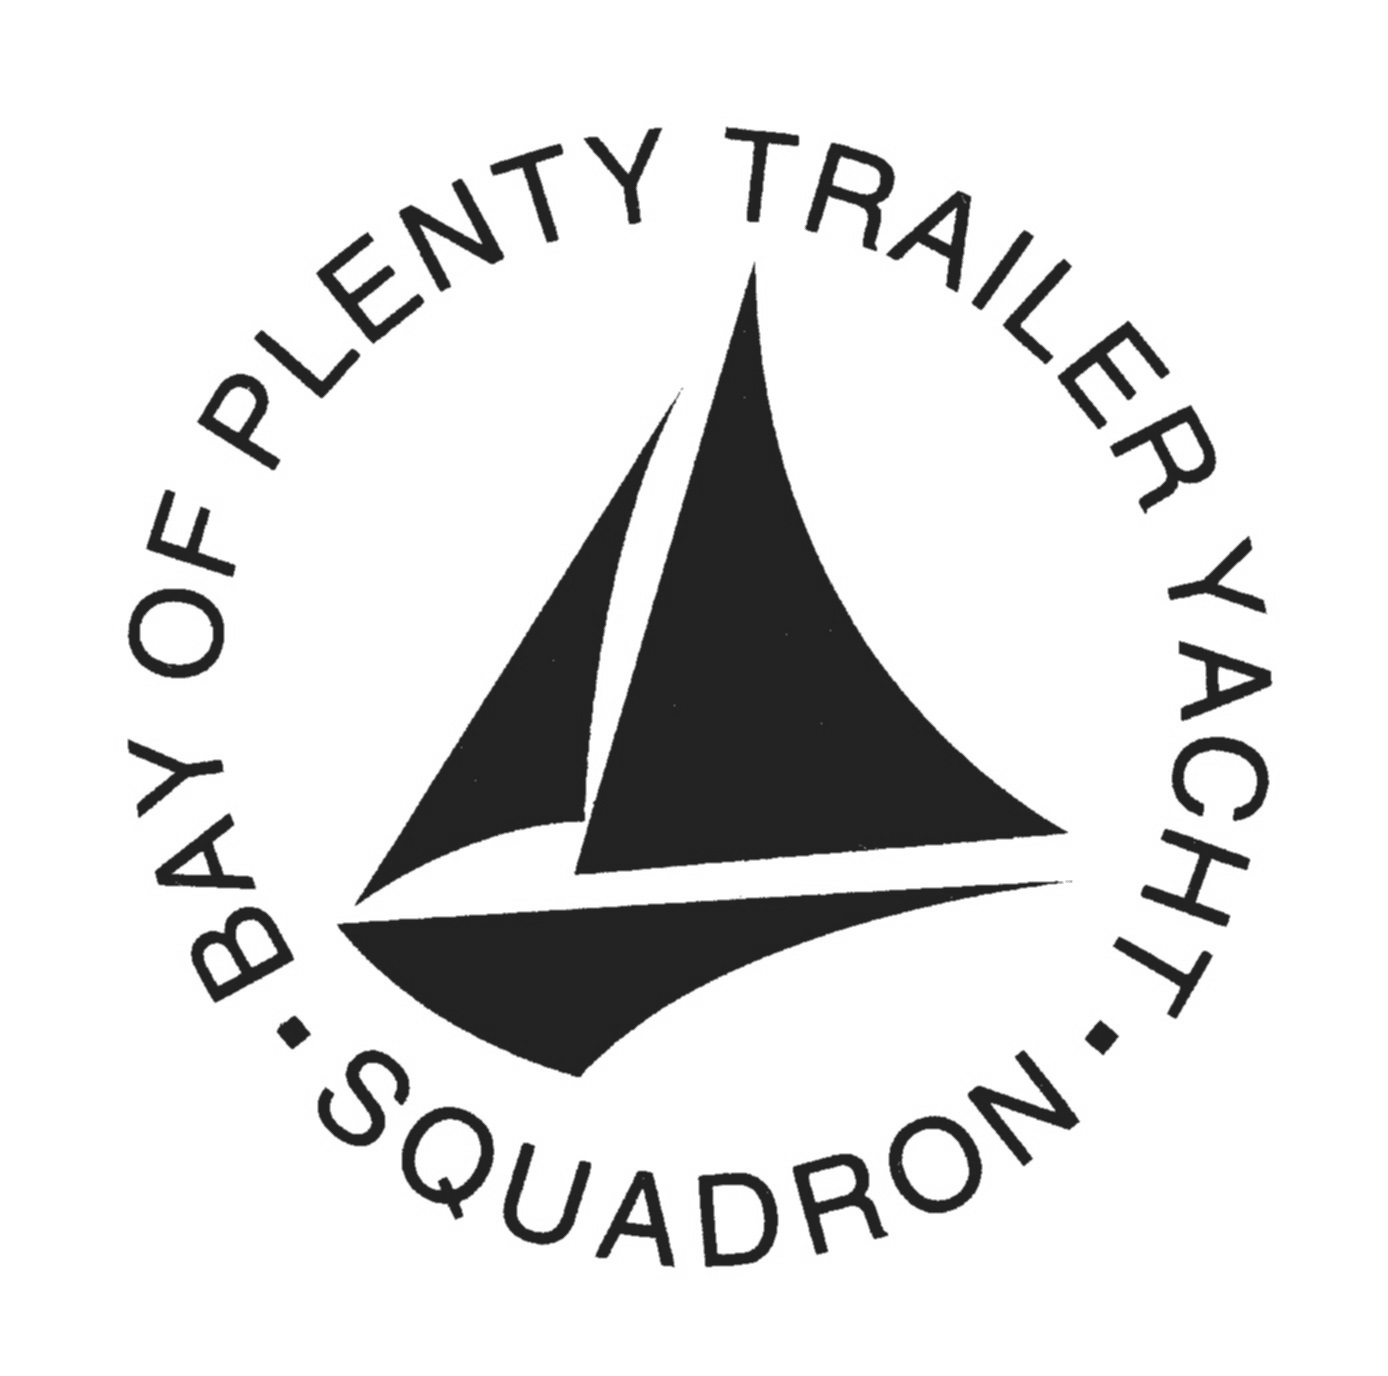 bop trailer yacht squadron